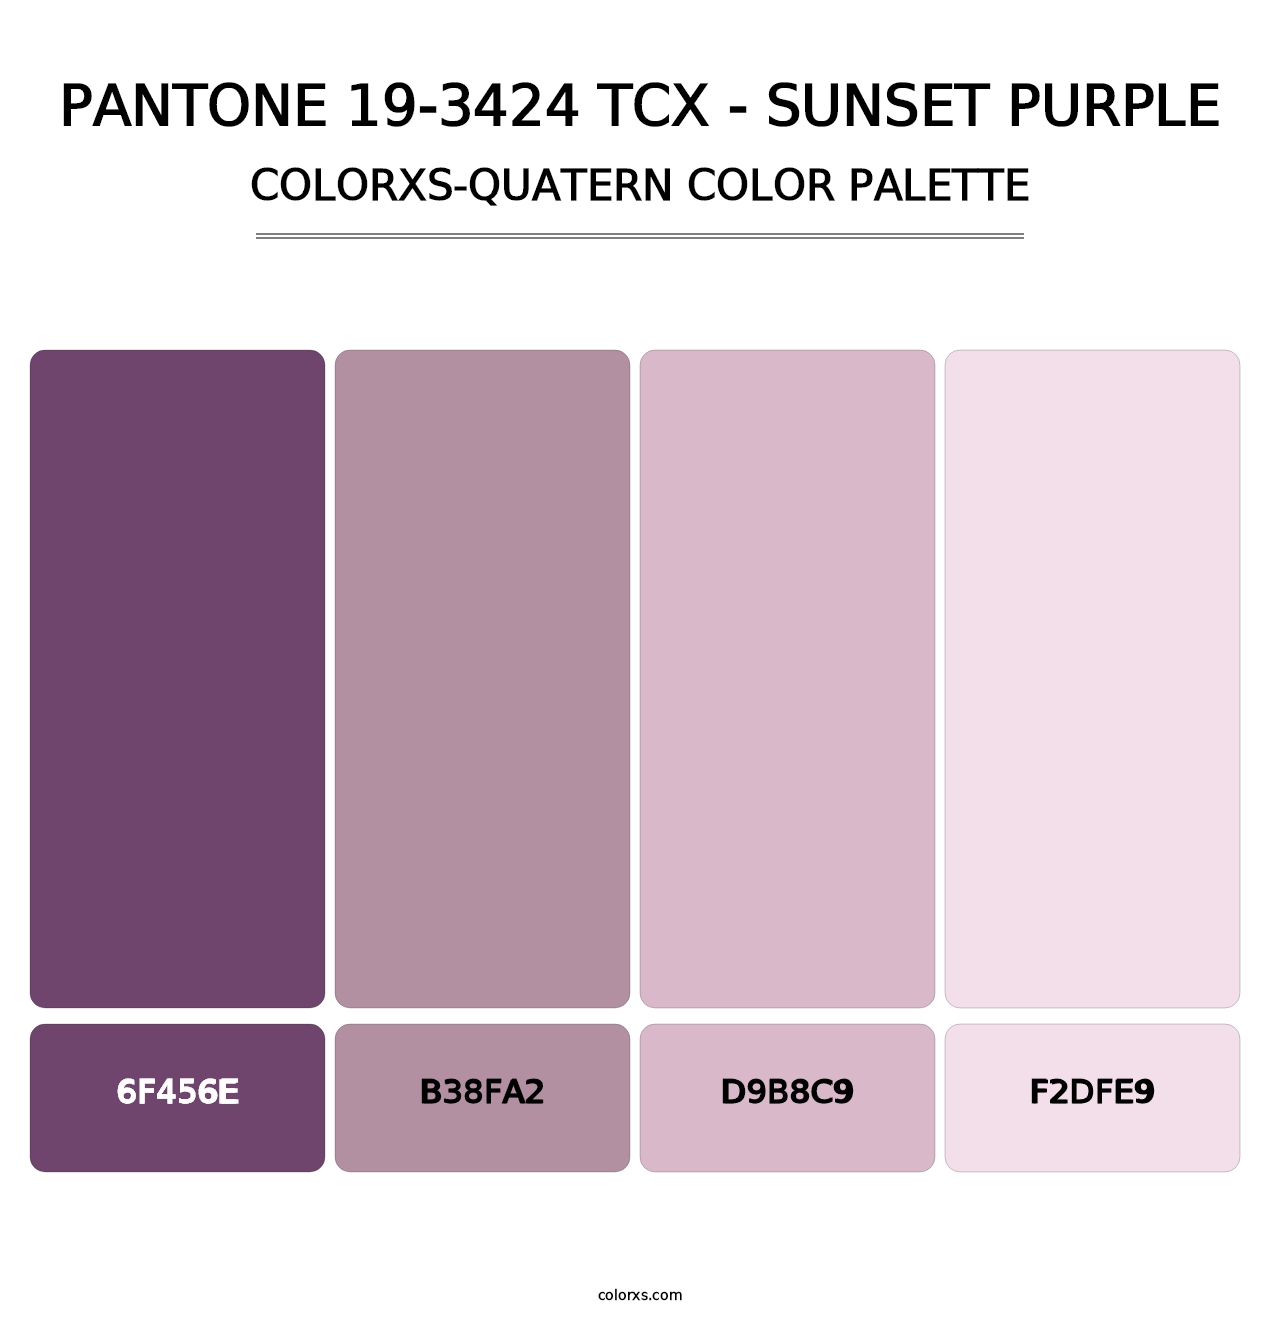 PANTONE 19-3424 TCX - Sunset Purple - Colorxs Quatern Palette